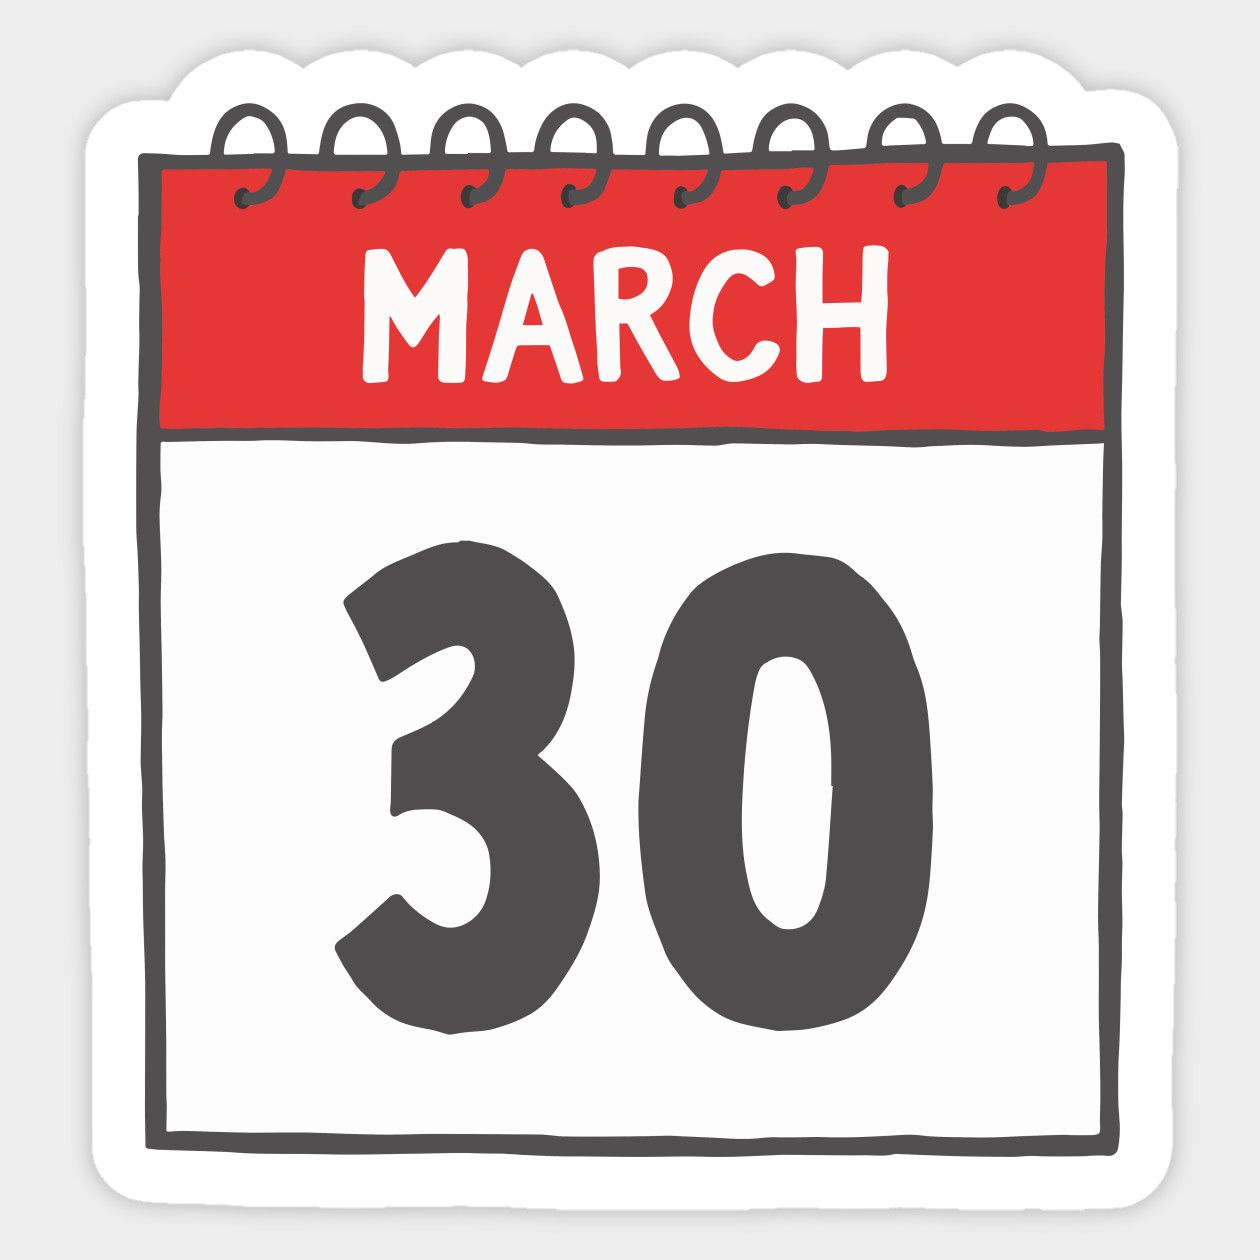 Hari Penting Di Tanggal 30 Maret : hari FIlm Nasional dan Hari Bipolar Sedunia